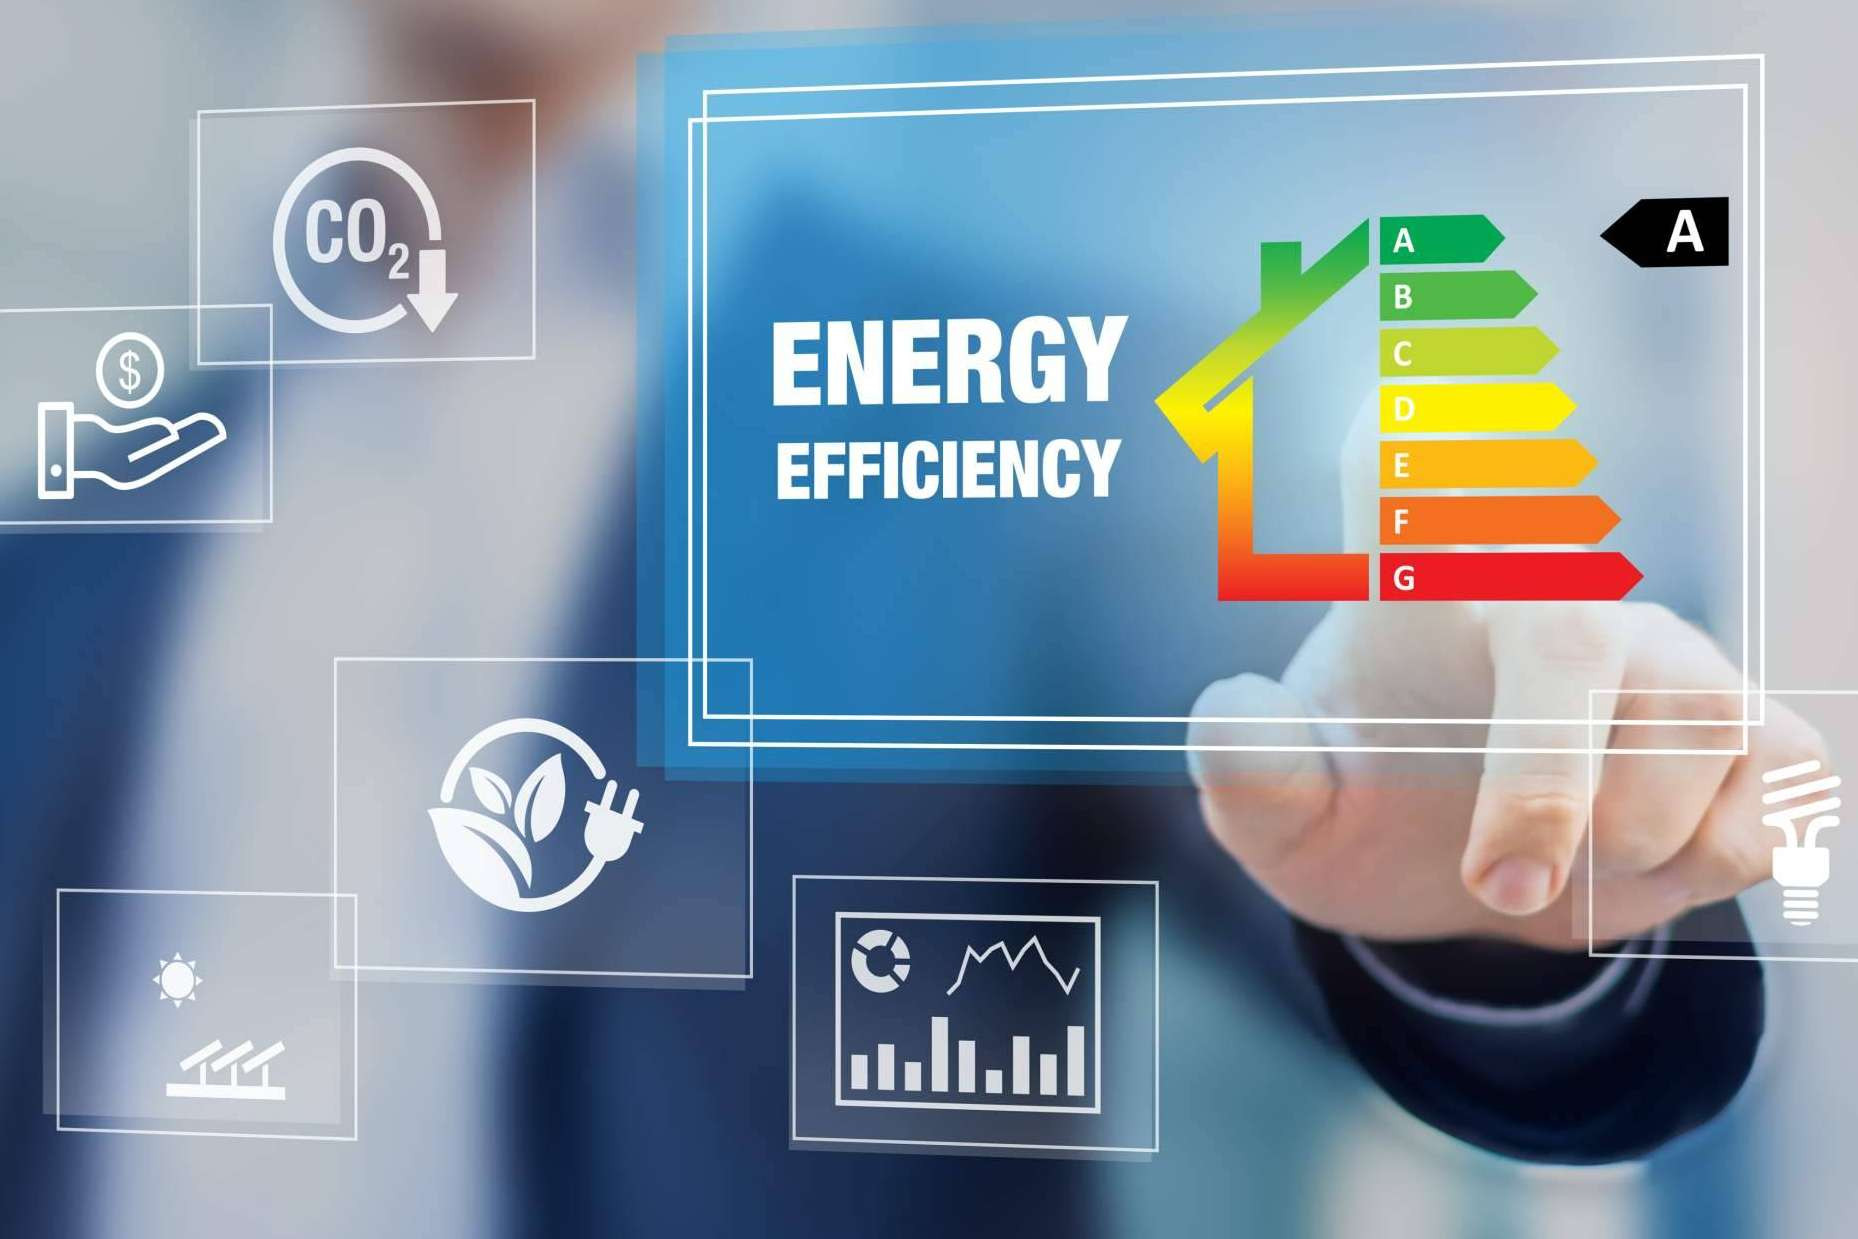  ¿Qué pueden hacer los hoteles, establecimientos turísticos y residencias para mejorar en eficiencia energética? 